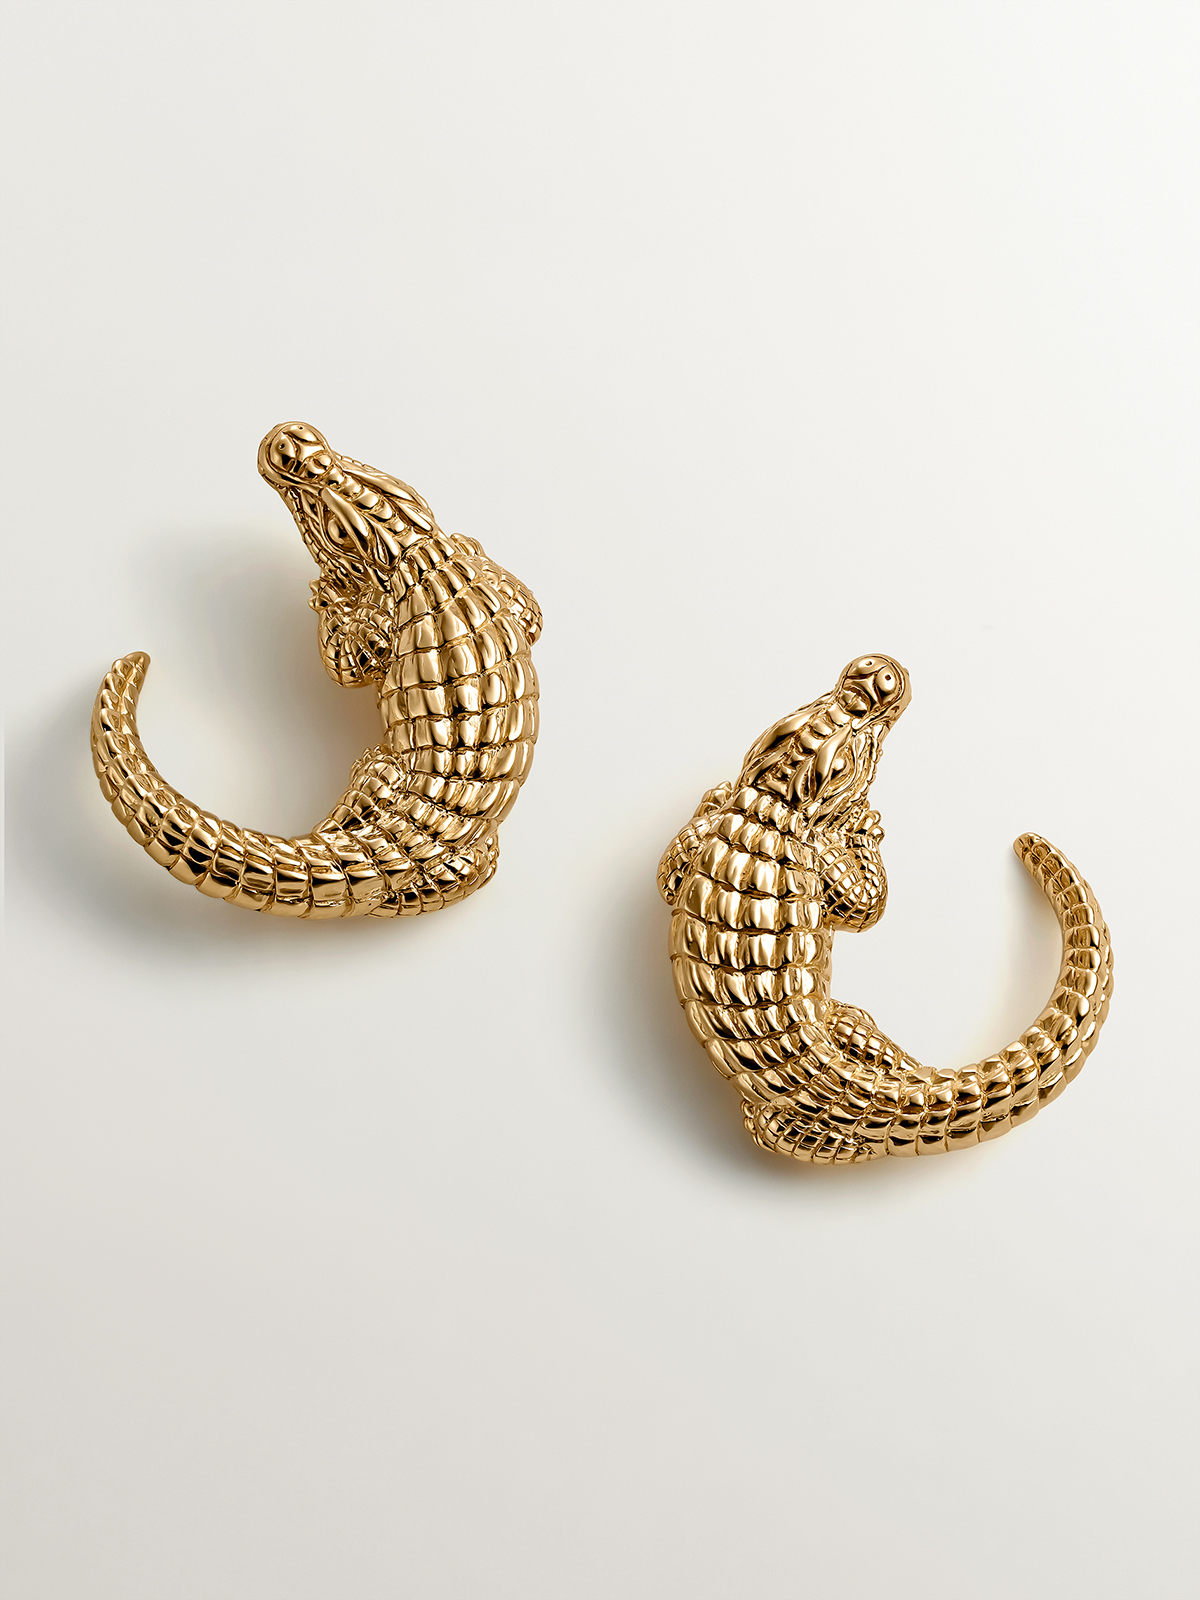 925 silver earrings in 18K yellow gold shaped like crocodile